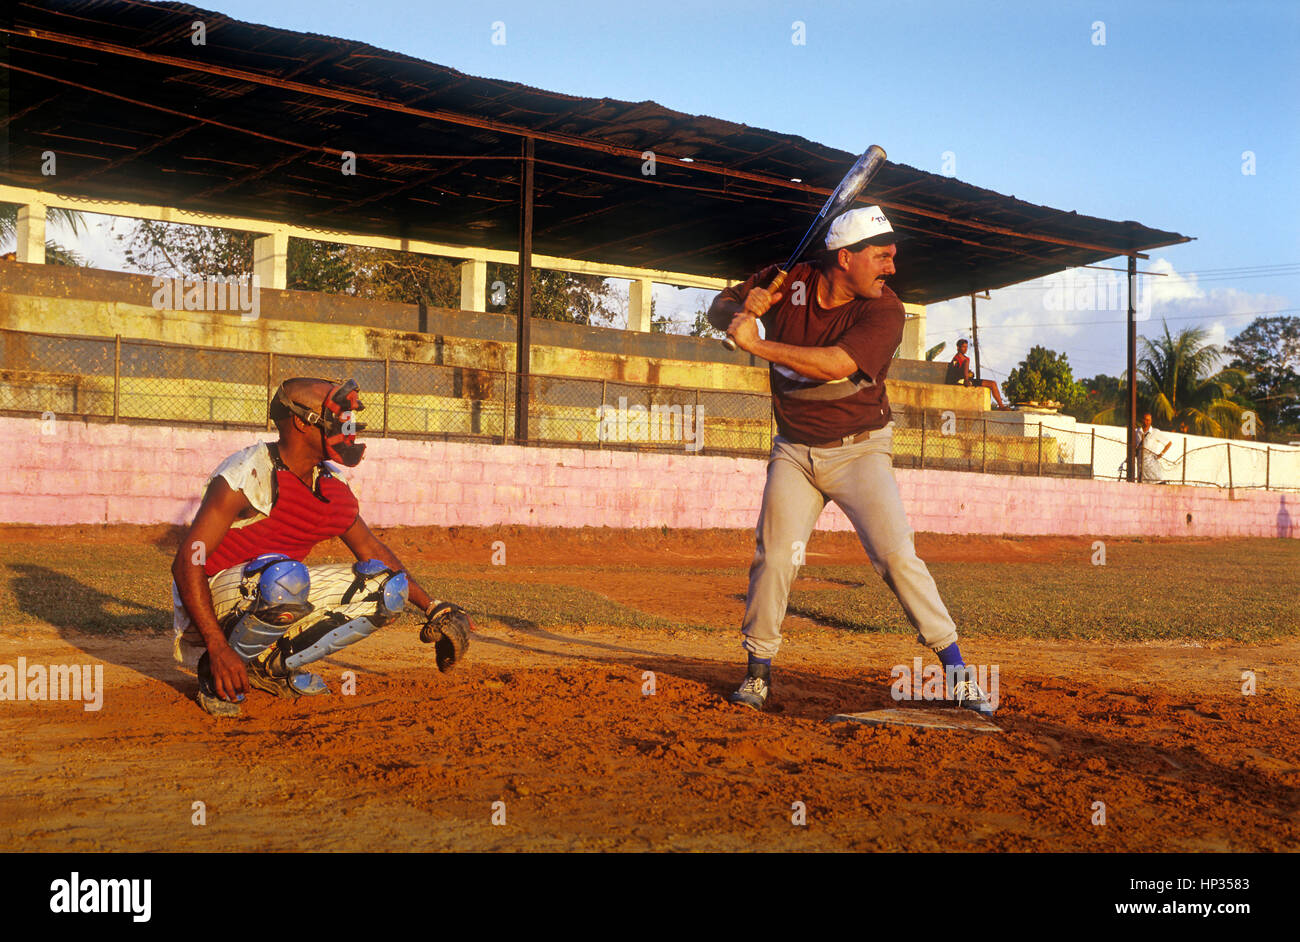 men playing baseball, Vinales, Pinar del Rio province, Cuba. Stock Photo